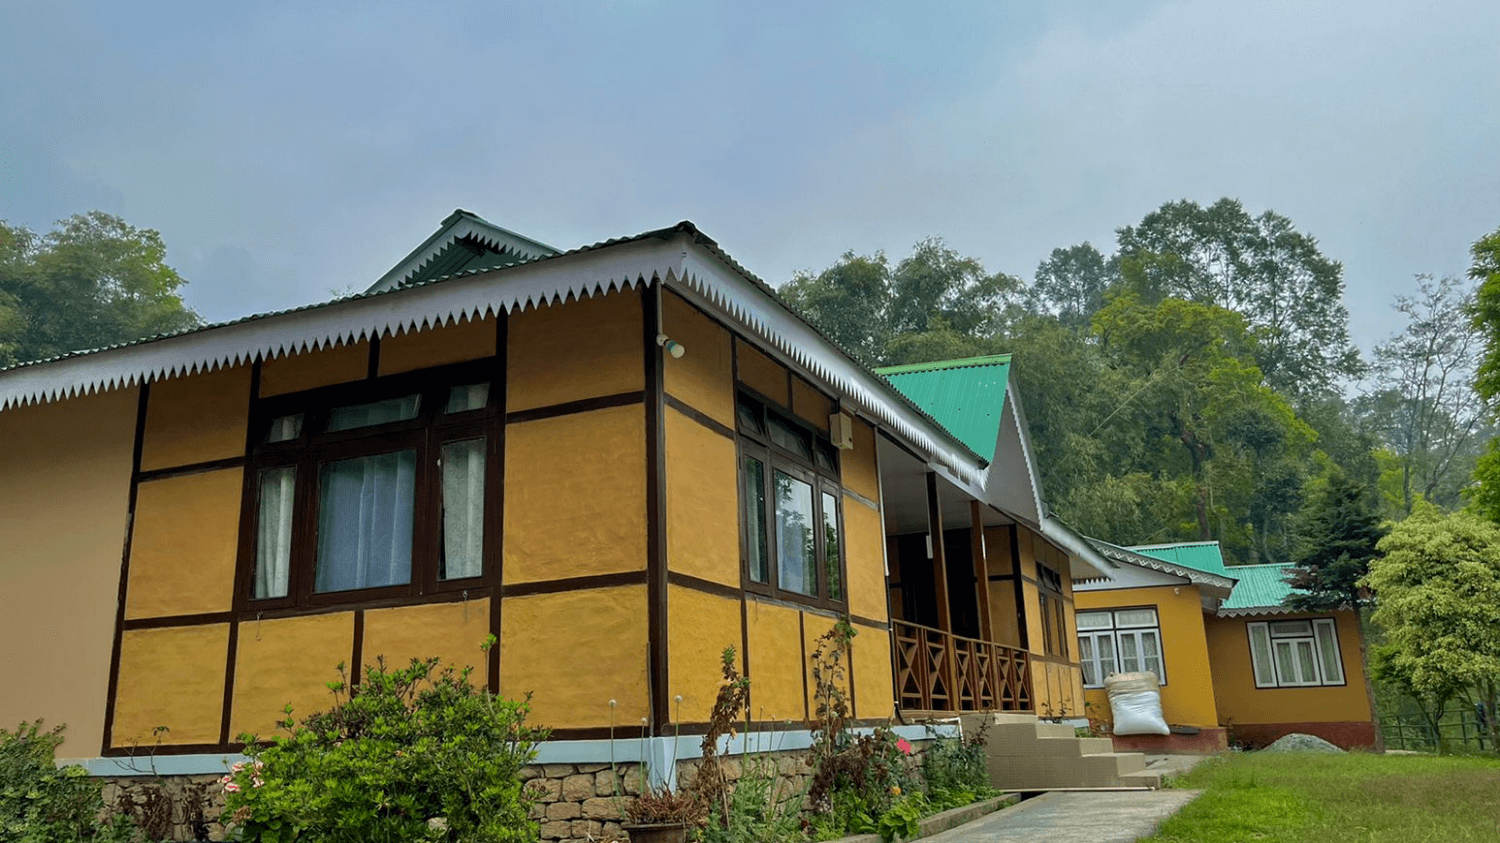 Kazi Homestay, Pakyong, Sikkim, India